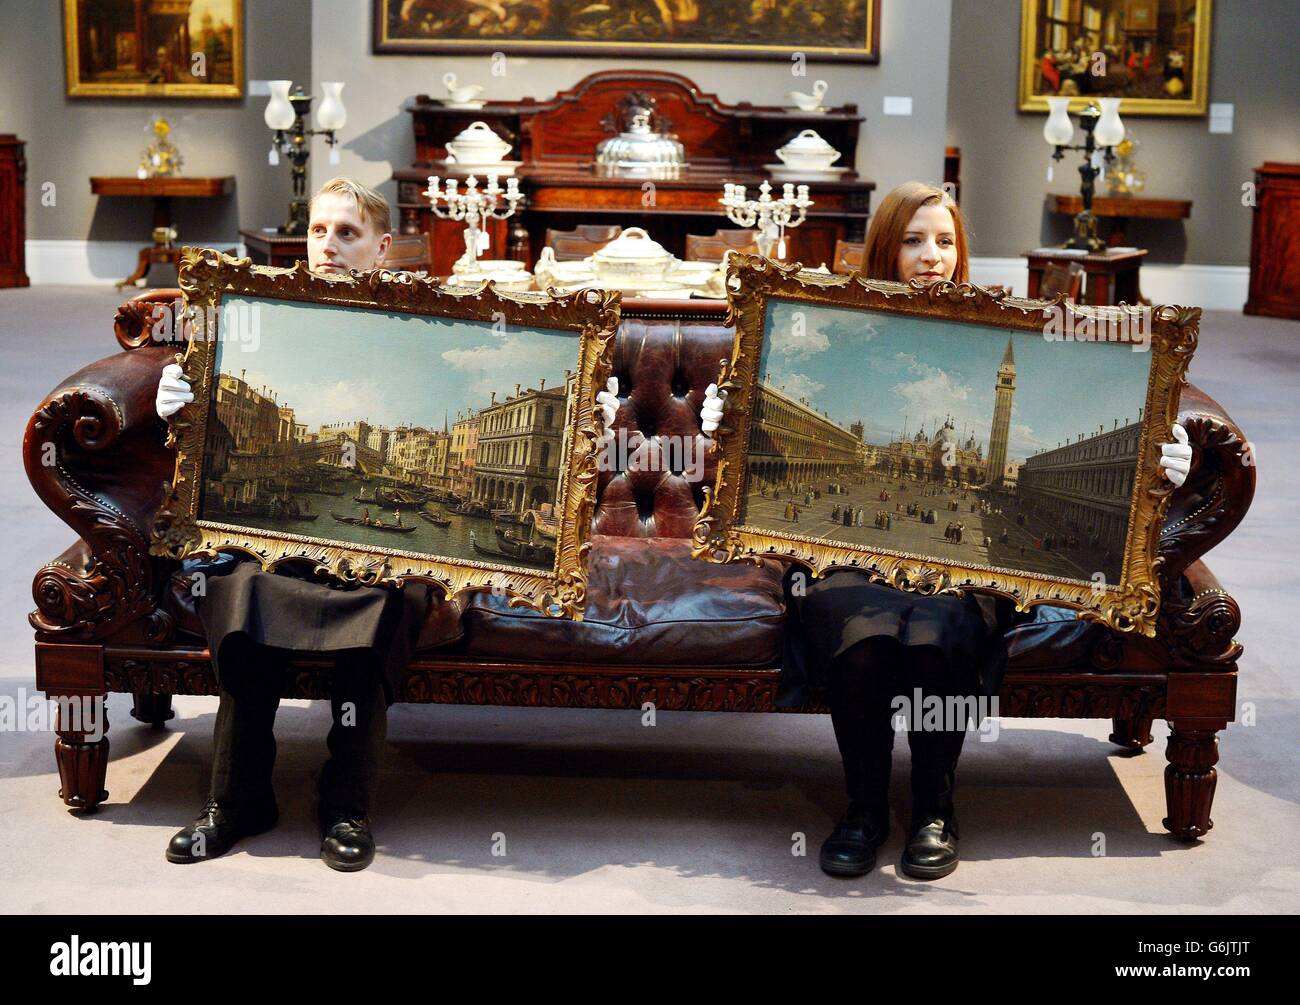 Due dipendenti della Sotheby's Auctioneers hanno due dipinti dell'artista italiano Canaletto, di Piazza San Marco (a destra) e del Ponte di Rialto e del Canal Grande a Venezia, che vengono offerti in coppia in vendita tra 8-12 milioni di £il 4 dicembre, presso il loro showroom nel centro di Londra. Foto Stock